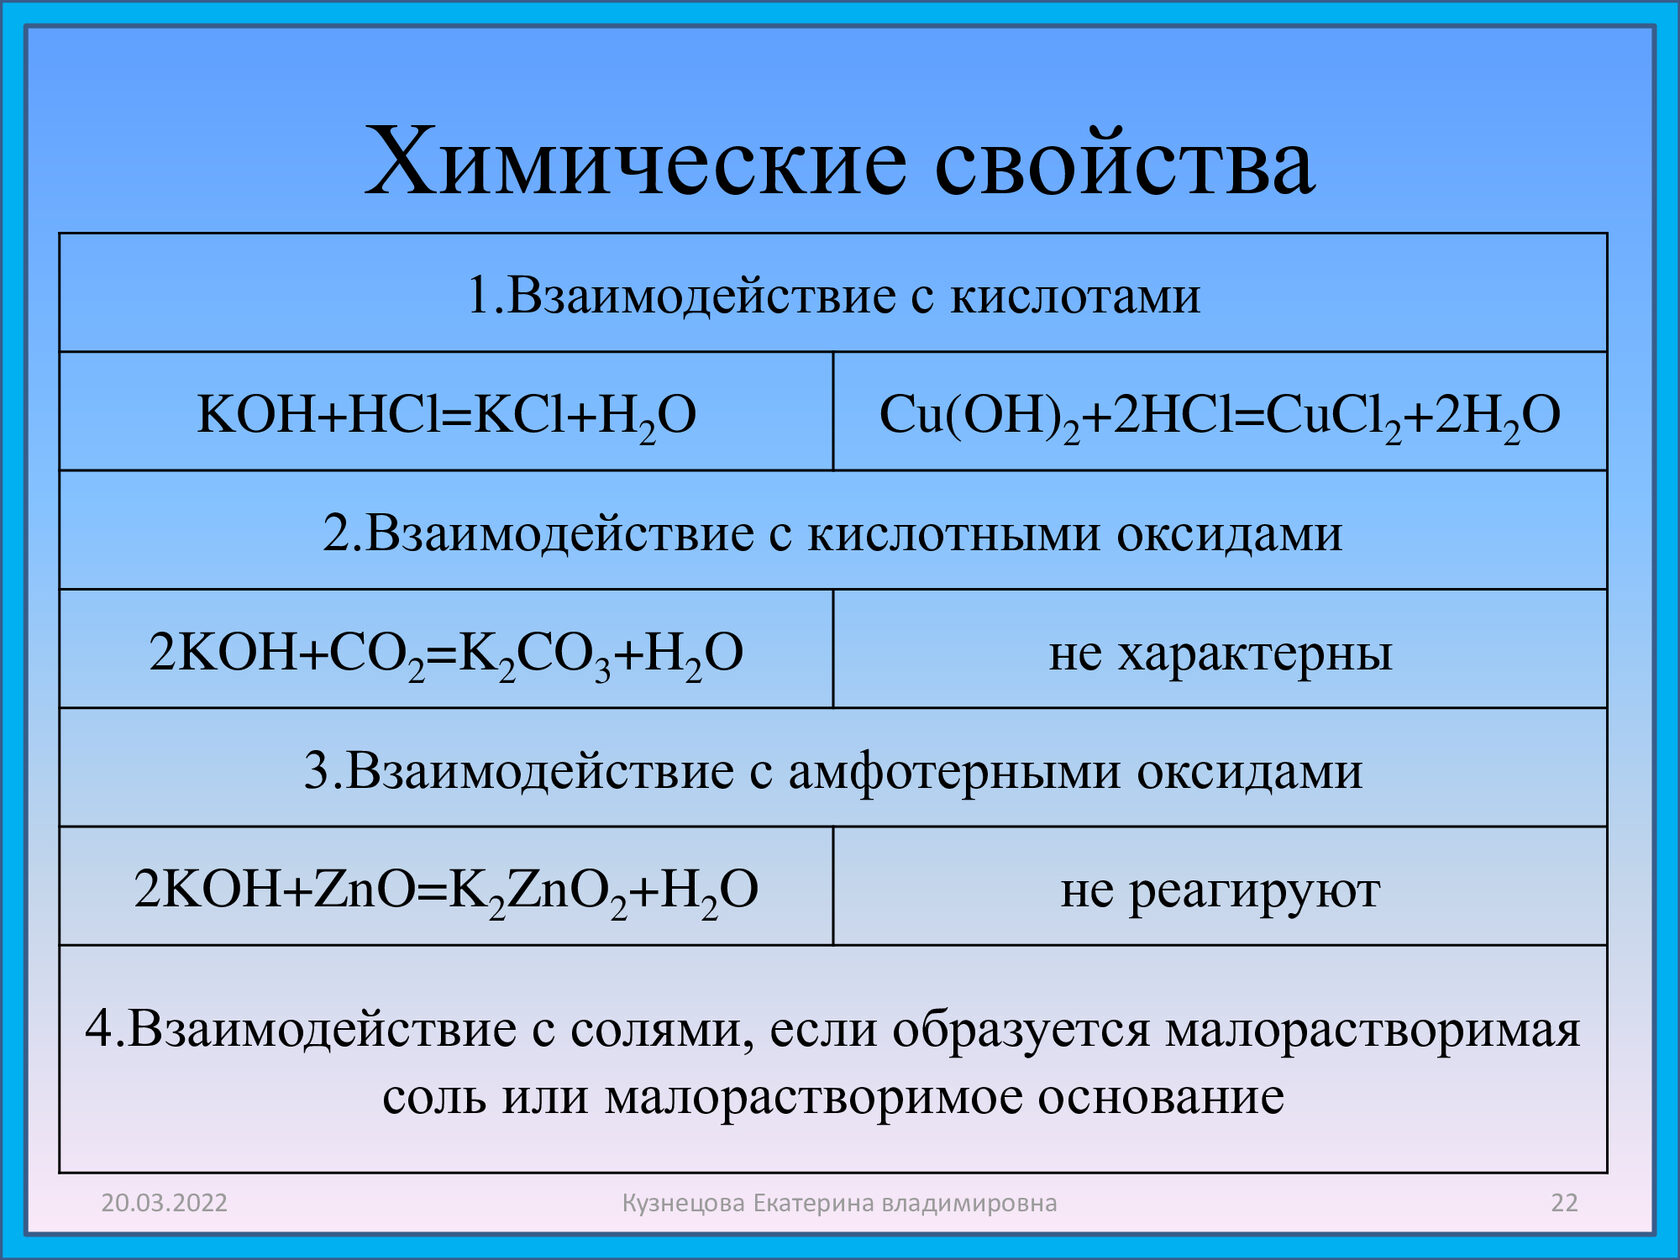 Класс соединений o2. Химические свойства. Koh химические свойства. Koh взаимодействует с. Химические свойства взаимодействие с кислотами.